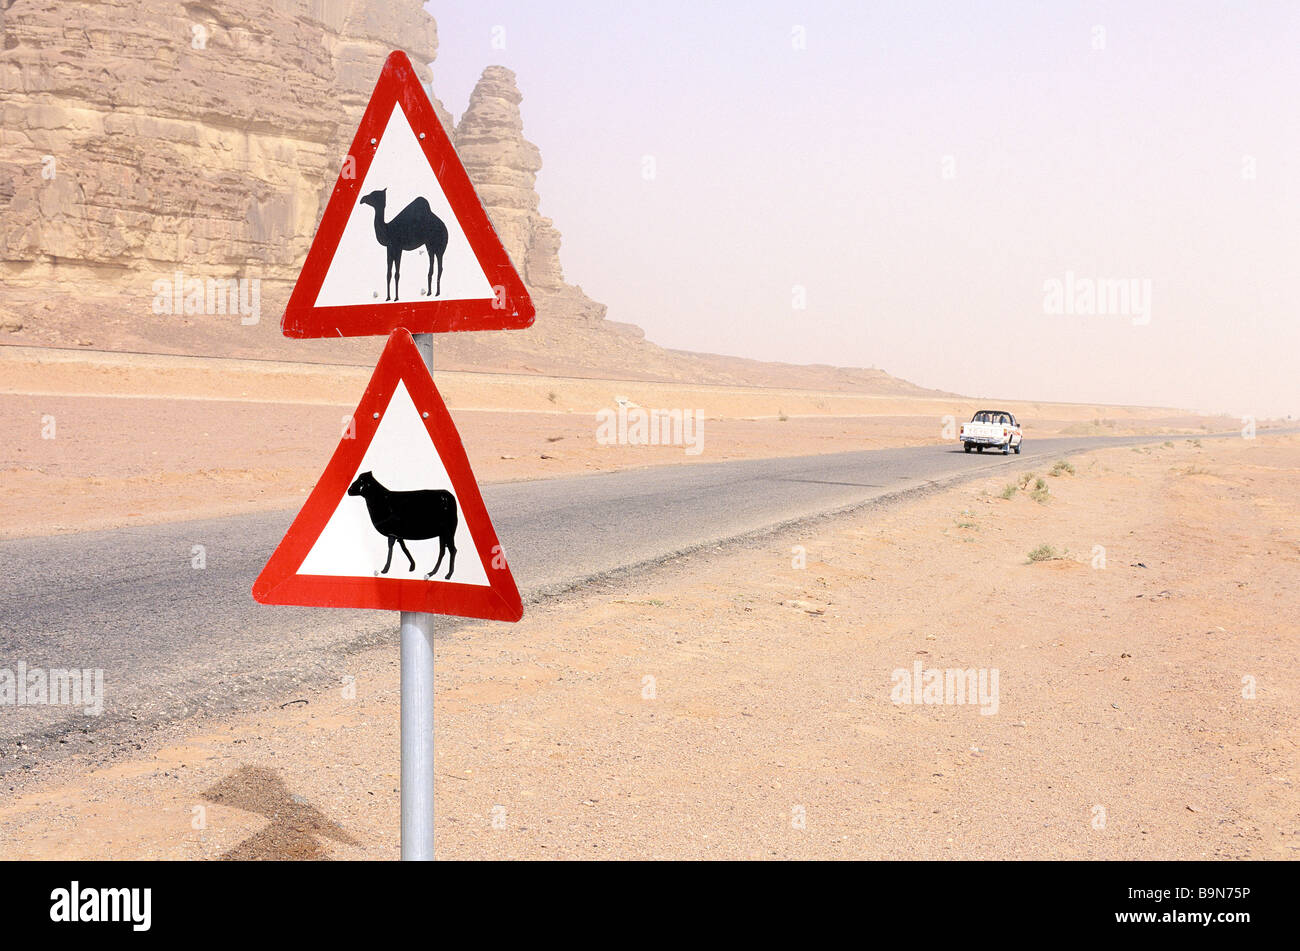 Jordan, Wadi Rum desert, roadsign Stock Photo